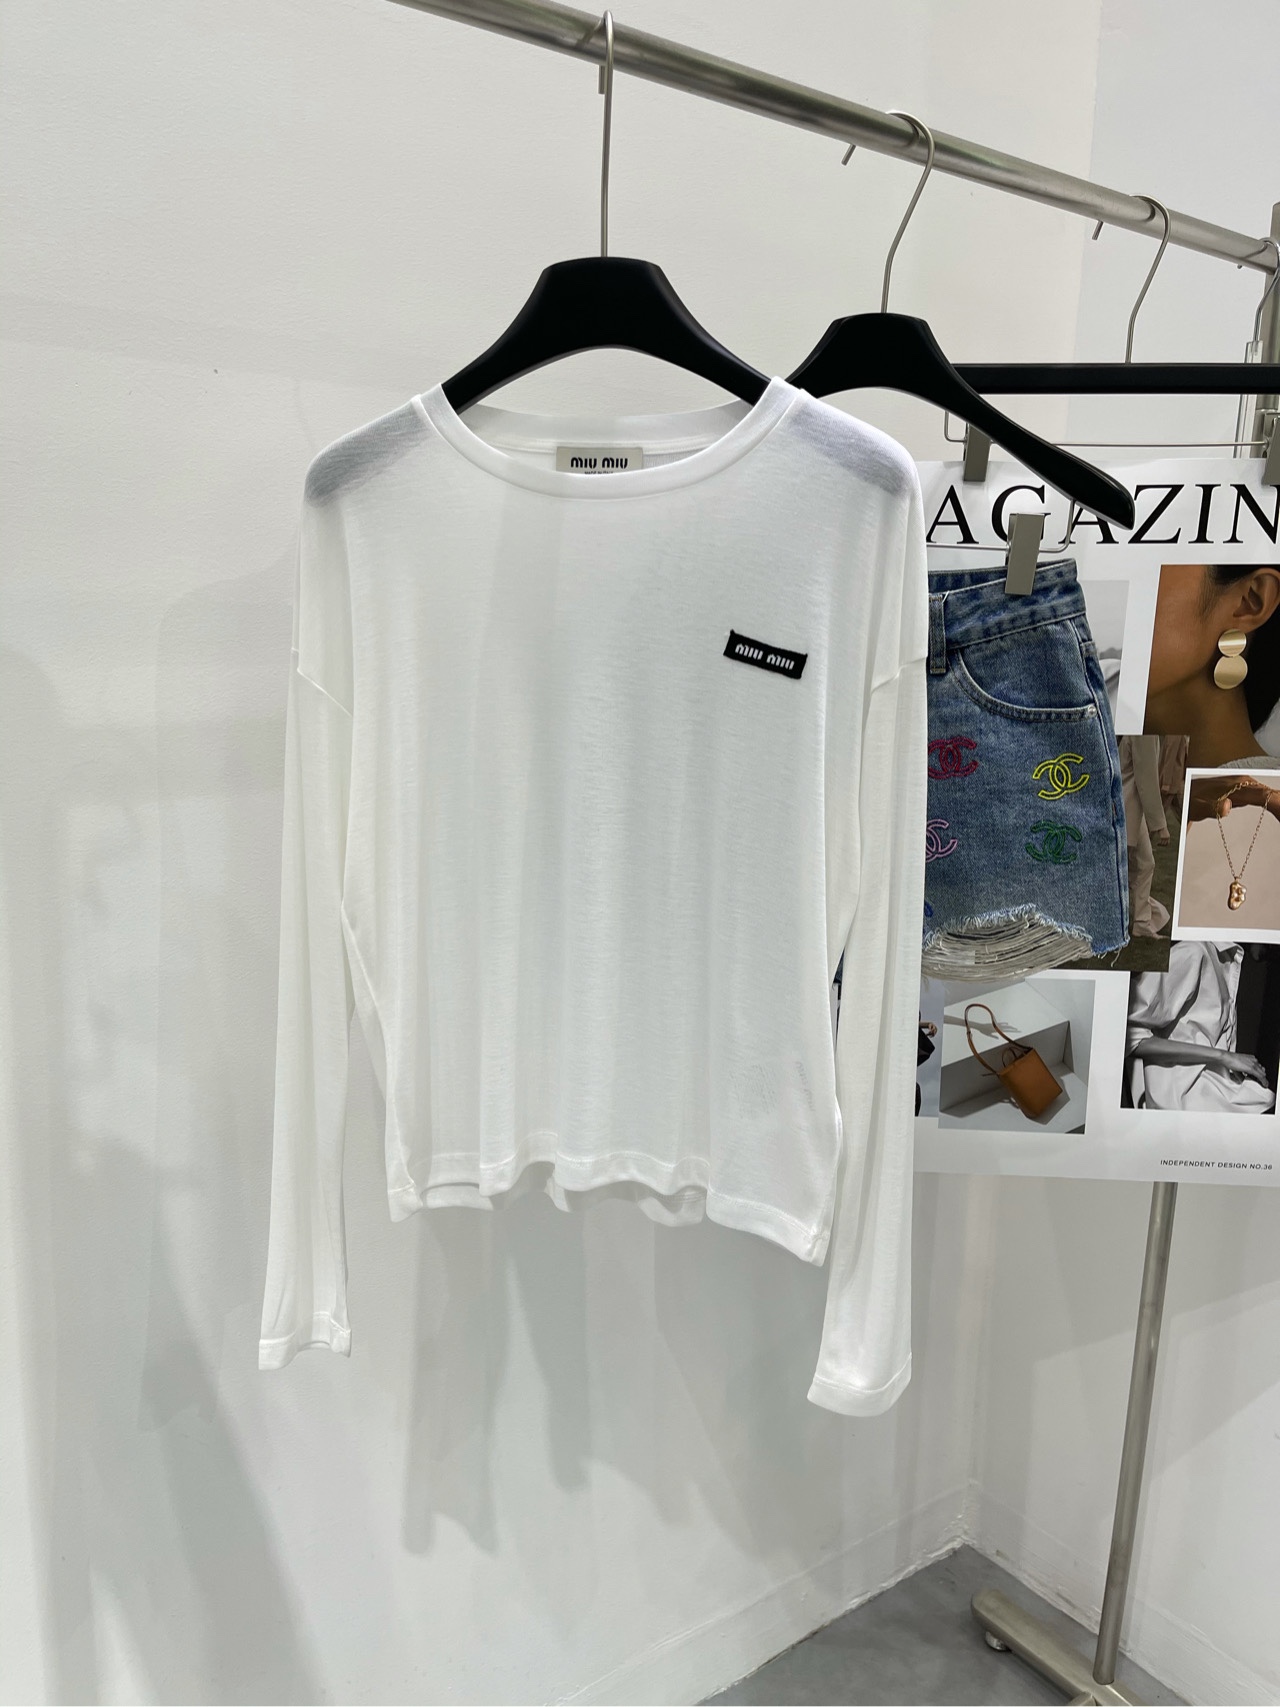 MiuMiu Vêtements T-Shirt Noir La couleur violette Blanc Coton élastique Série printemps Fashion Manches longues